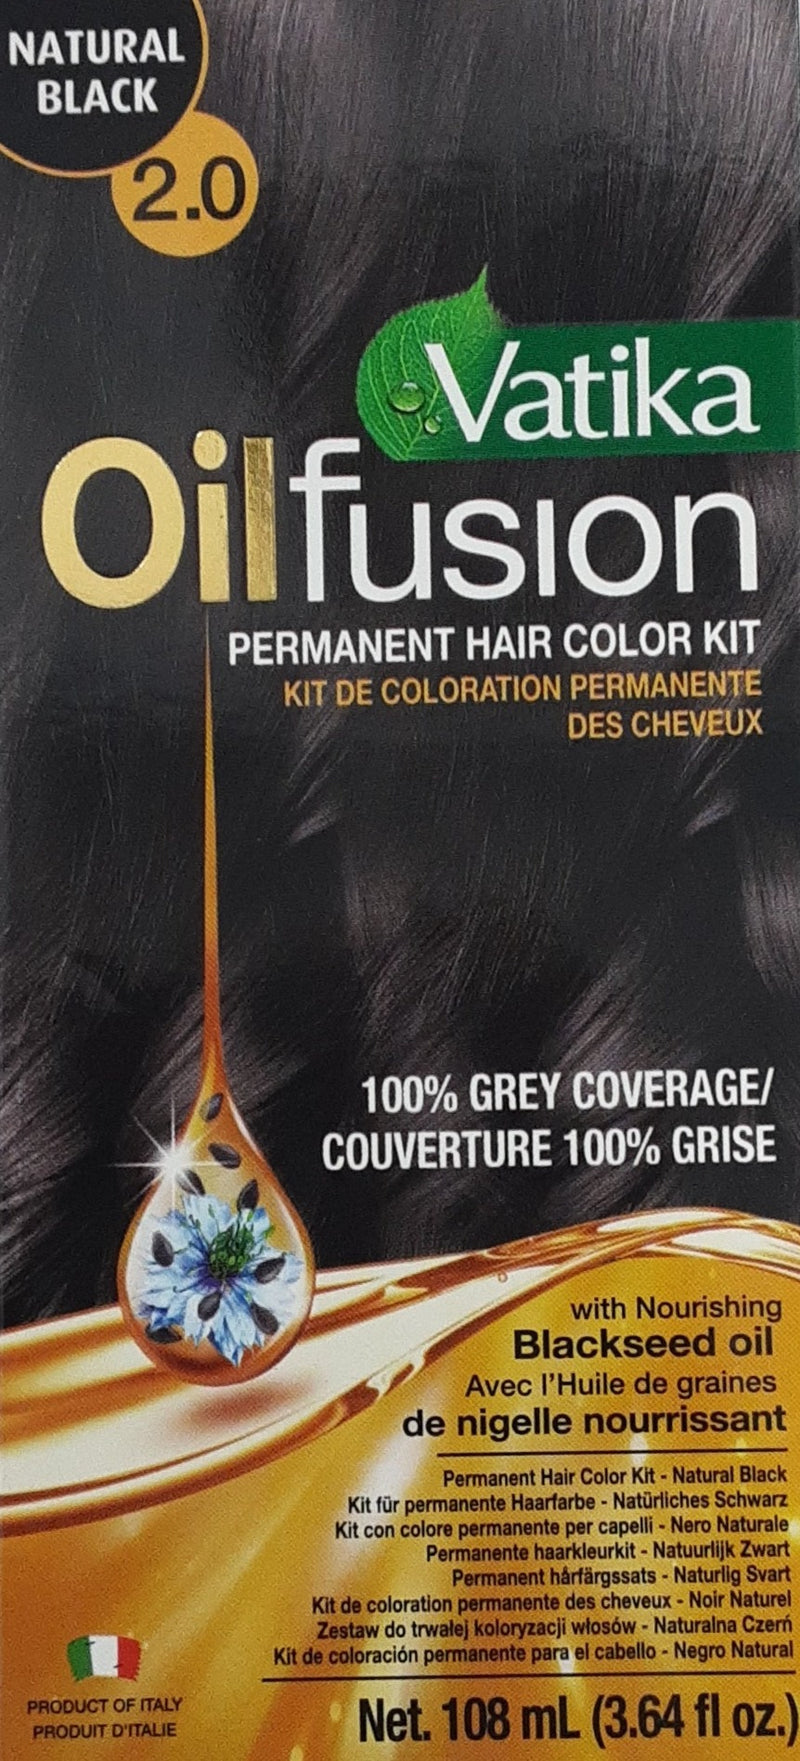 Vatika Oil Fusion Hair Color Kit Natural Black 108ml